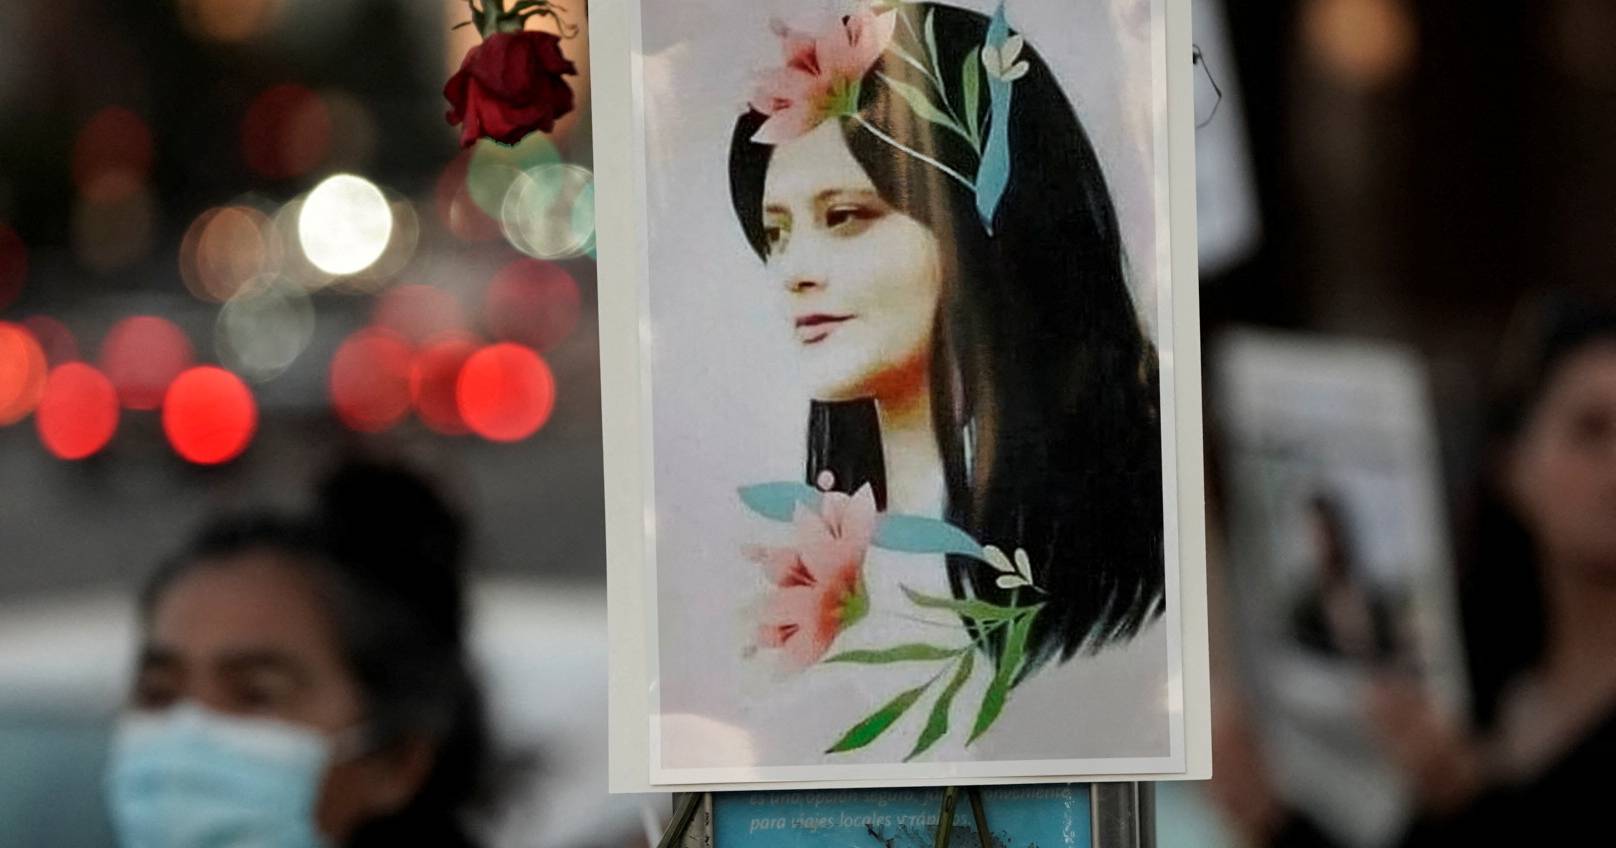 “Como um vulcão silencioso”, a morte de Mahsa Amini foi a faísca que acendeu a “revolução” no Irão